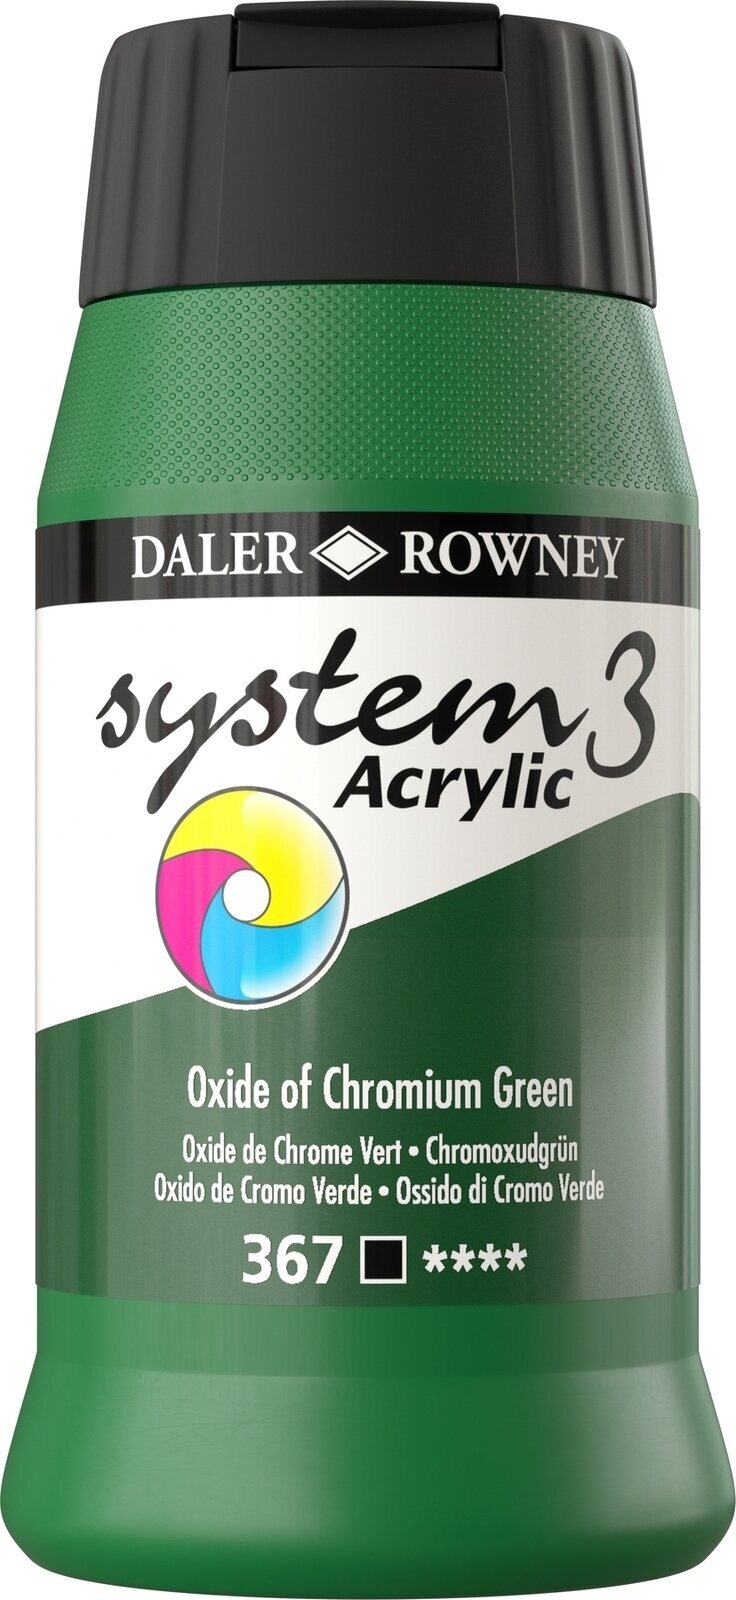 Peinture acrylique Daler Rowney System3 Peinture acrylique Oxide of Chromium Green 500 ml 1 pc